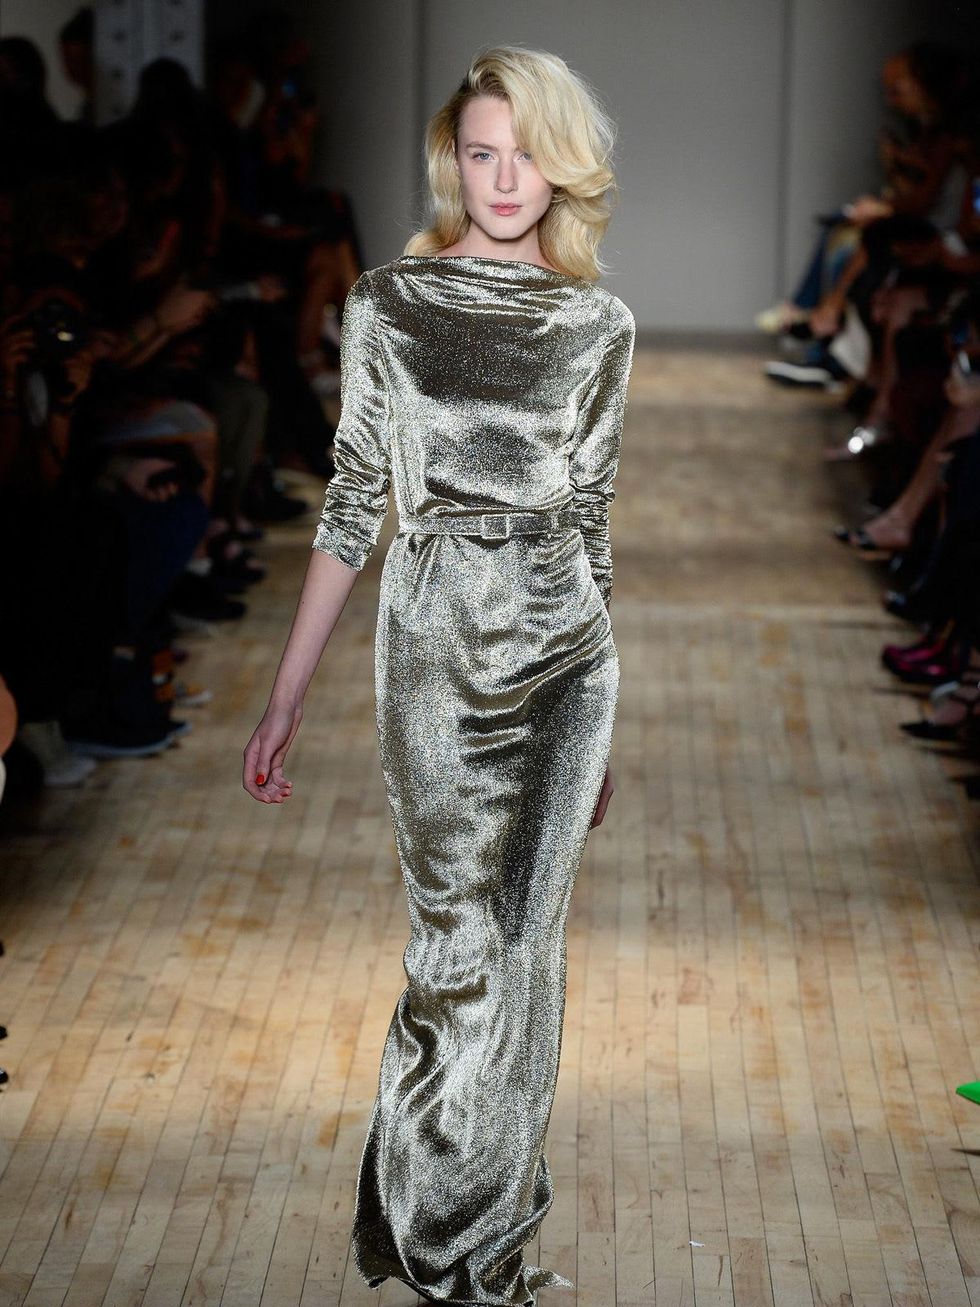 Fashion Week spring 2015 Jenny Packham metallic column gown